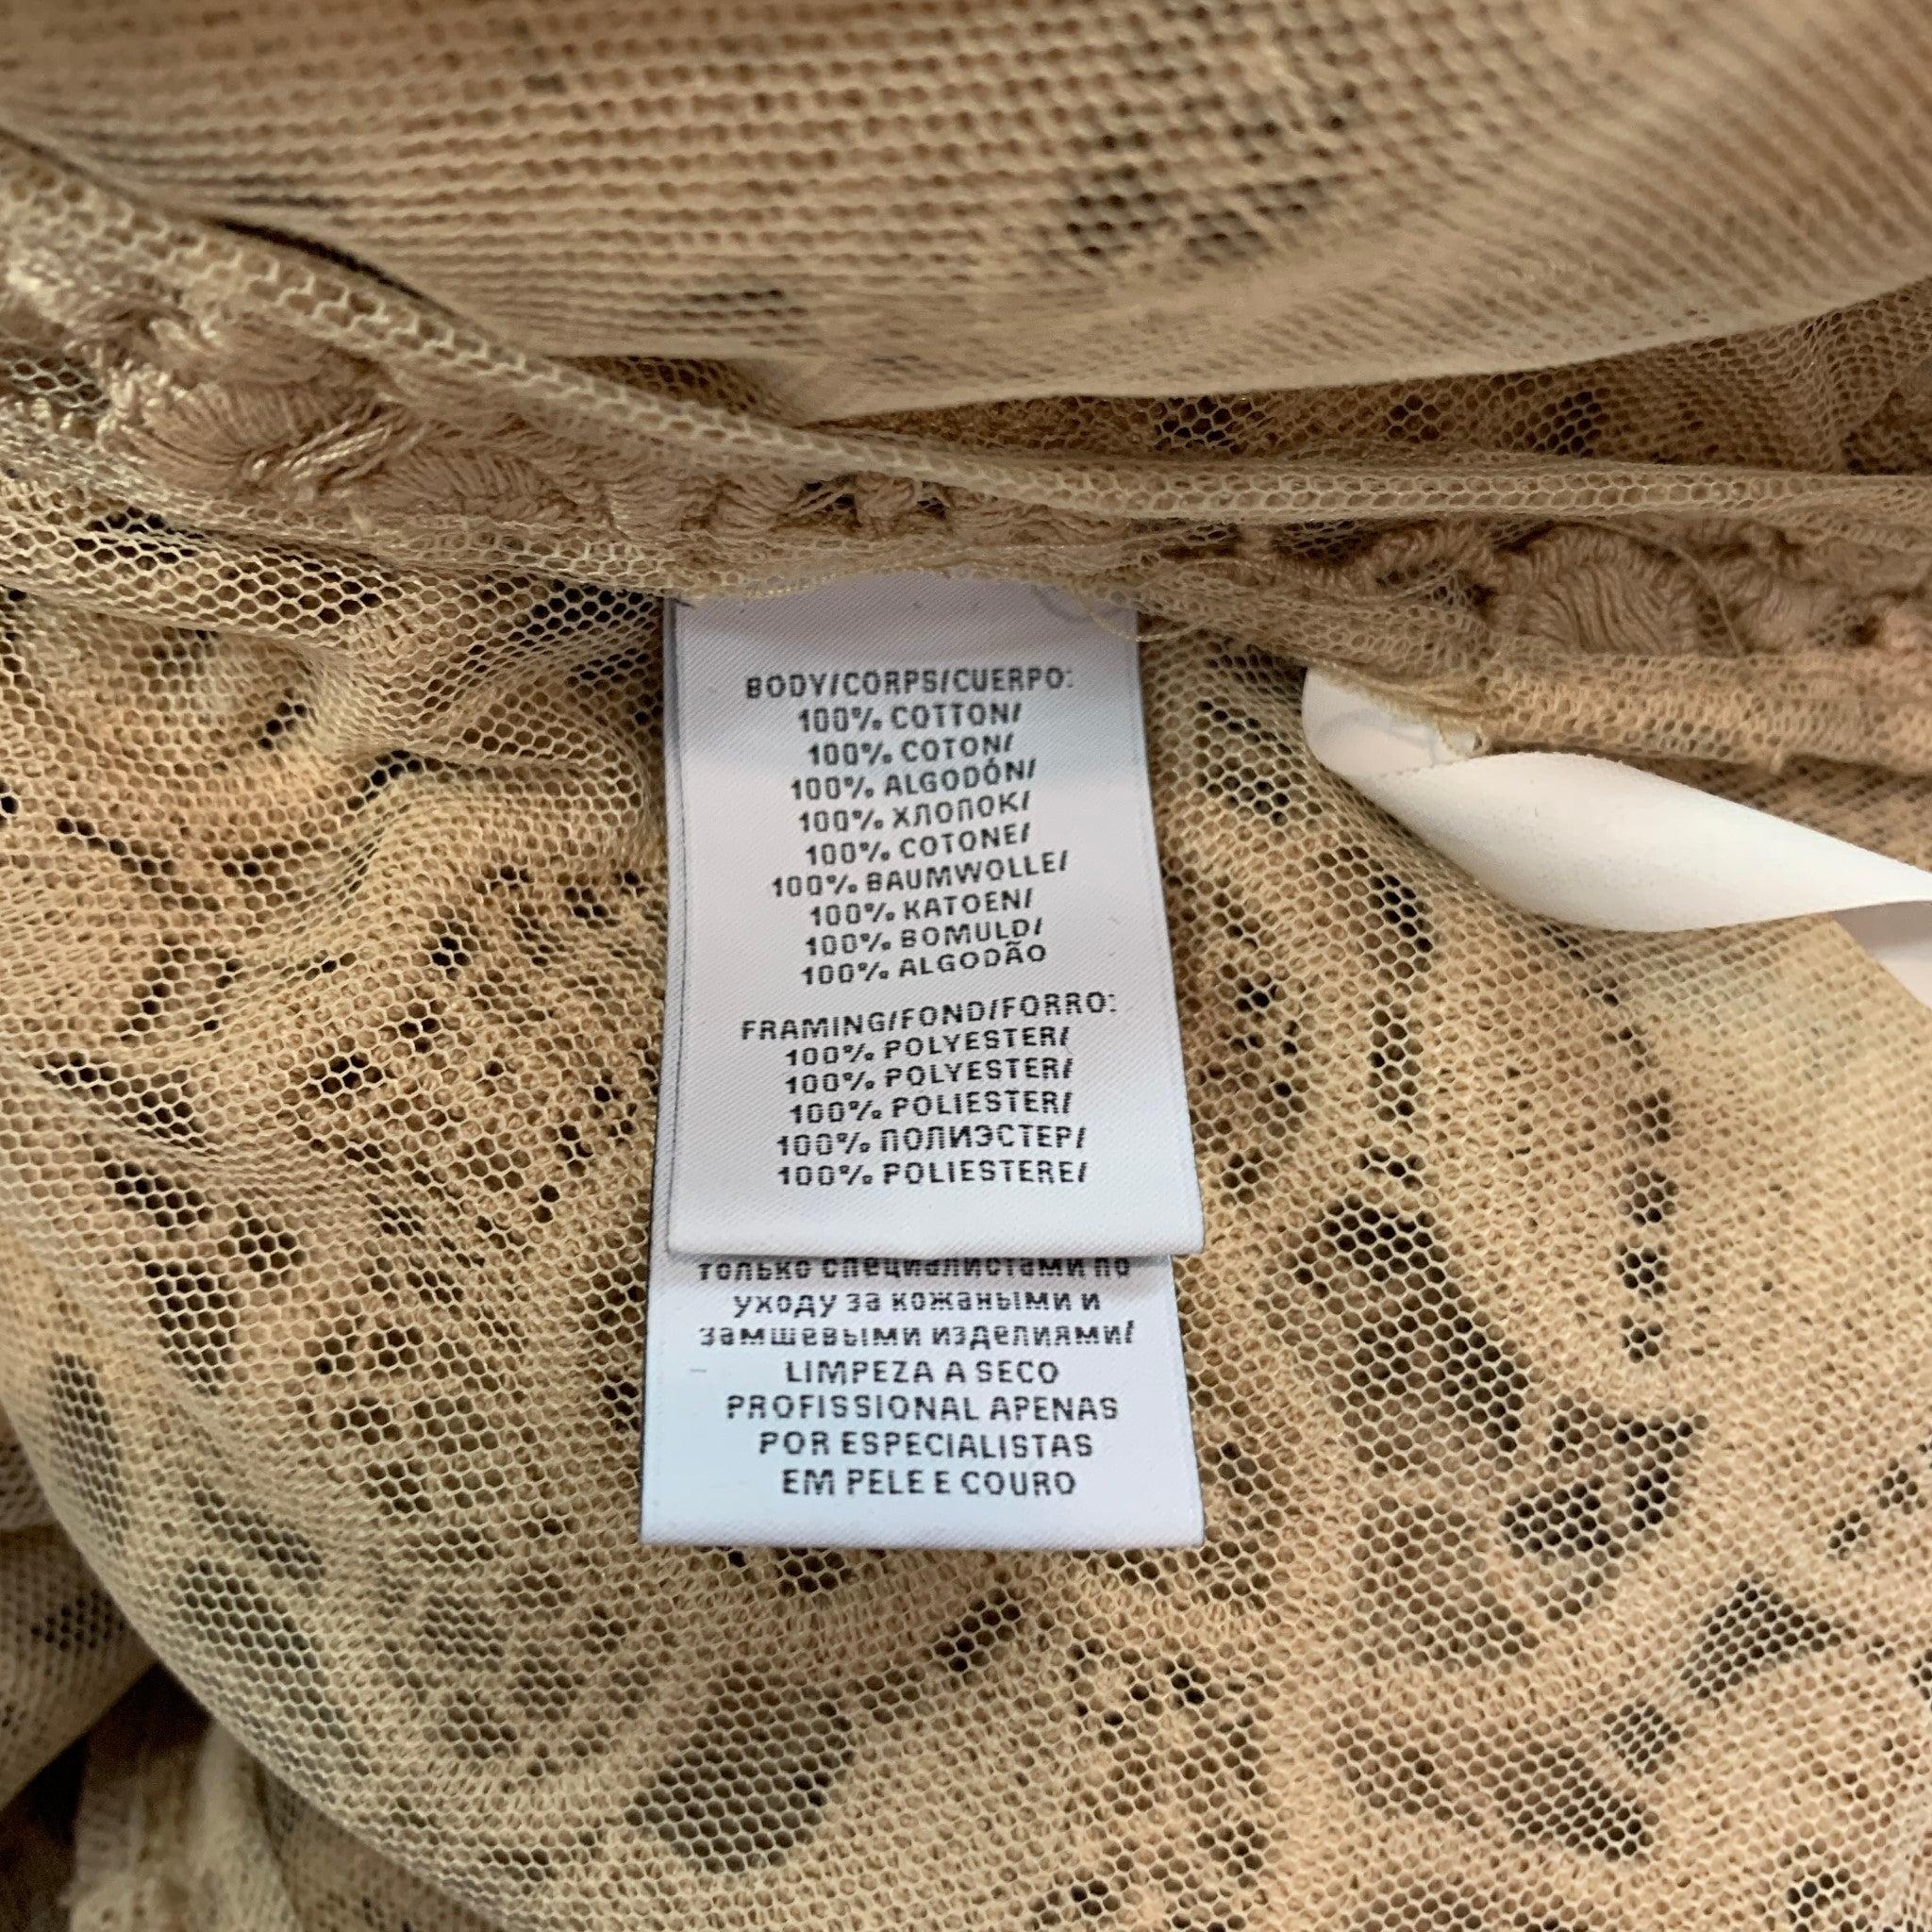 RALPH LAUREN Label Size 12 Beige Lace Textured Cotton Leather Trim Cardigan For Sale 1